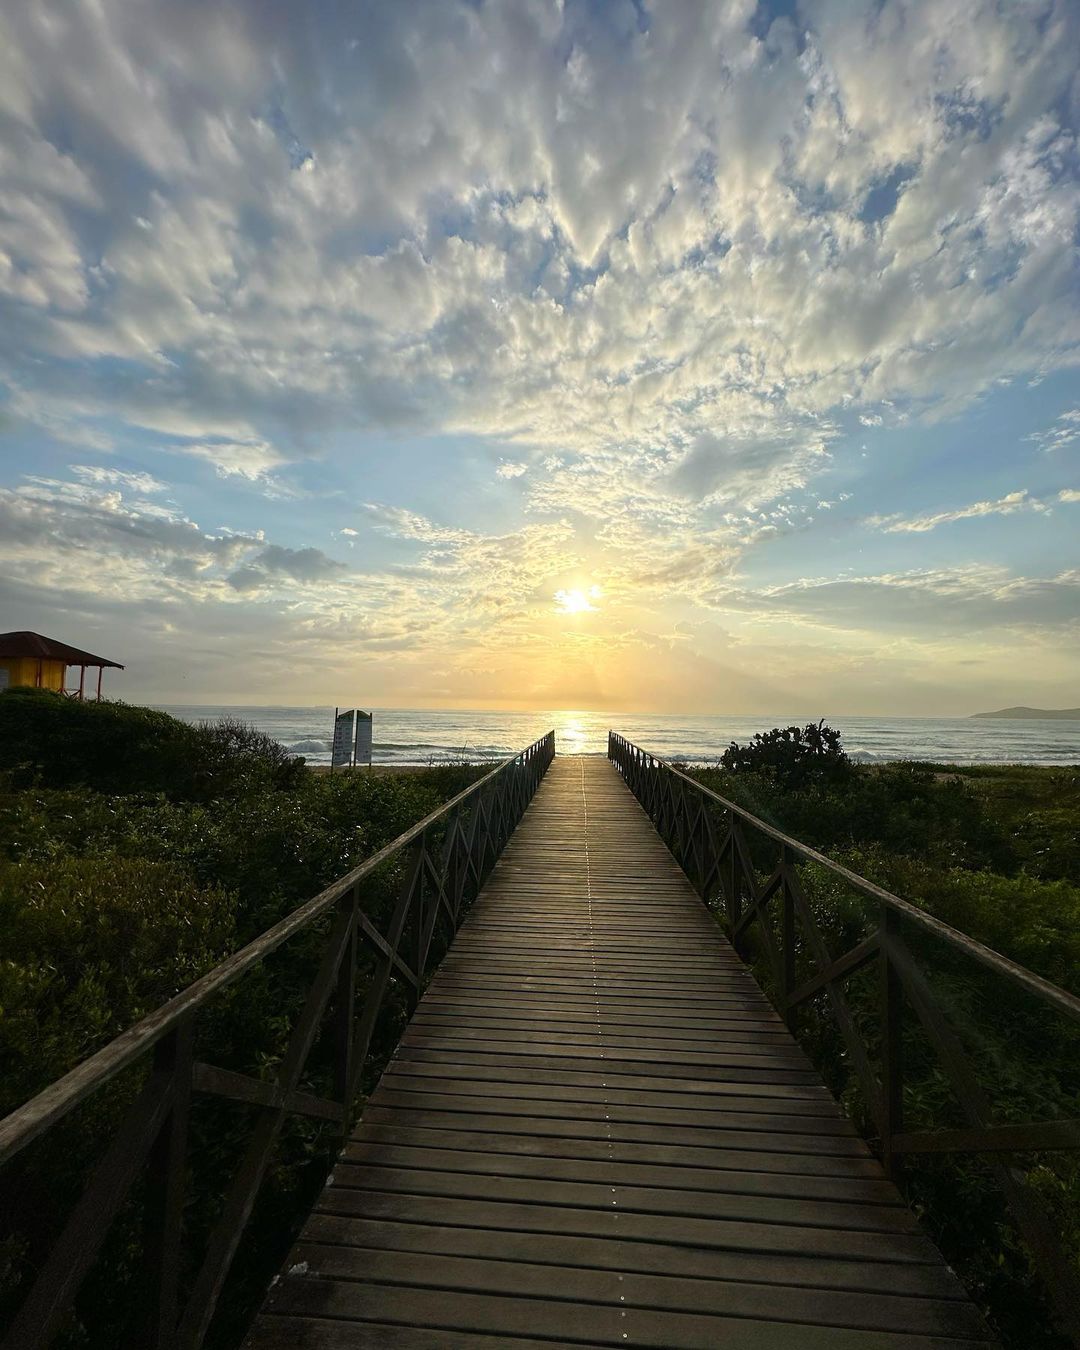 Gisele Bündchen mostra fotos das férias em Santa Catarina Reprodução/Instagram 18.12.2022